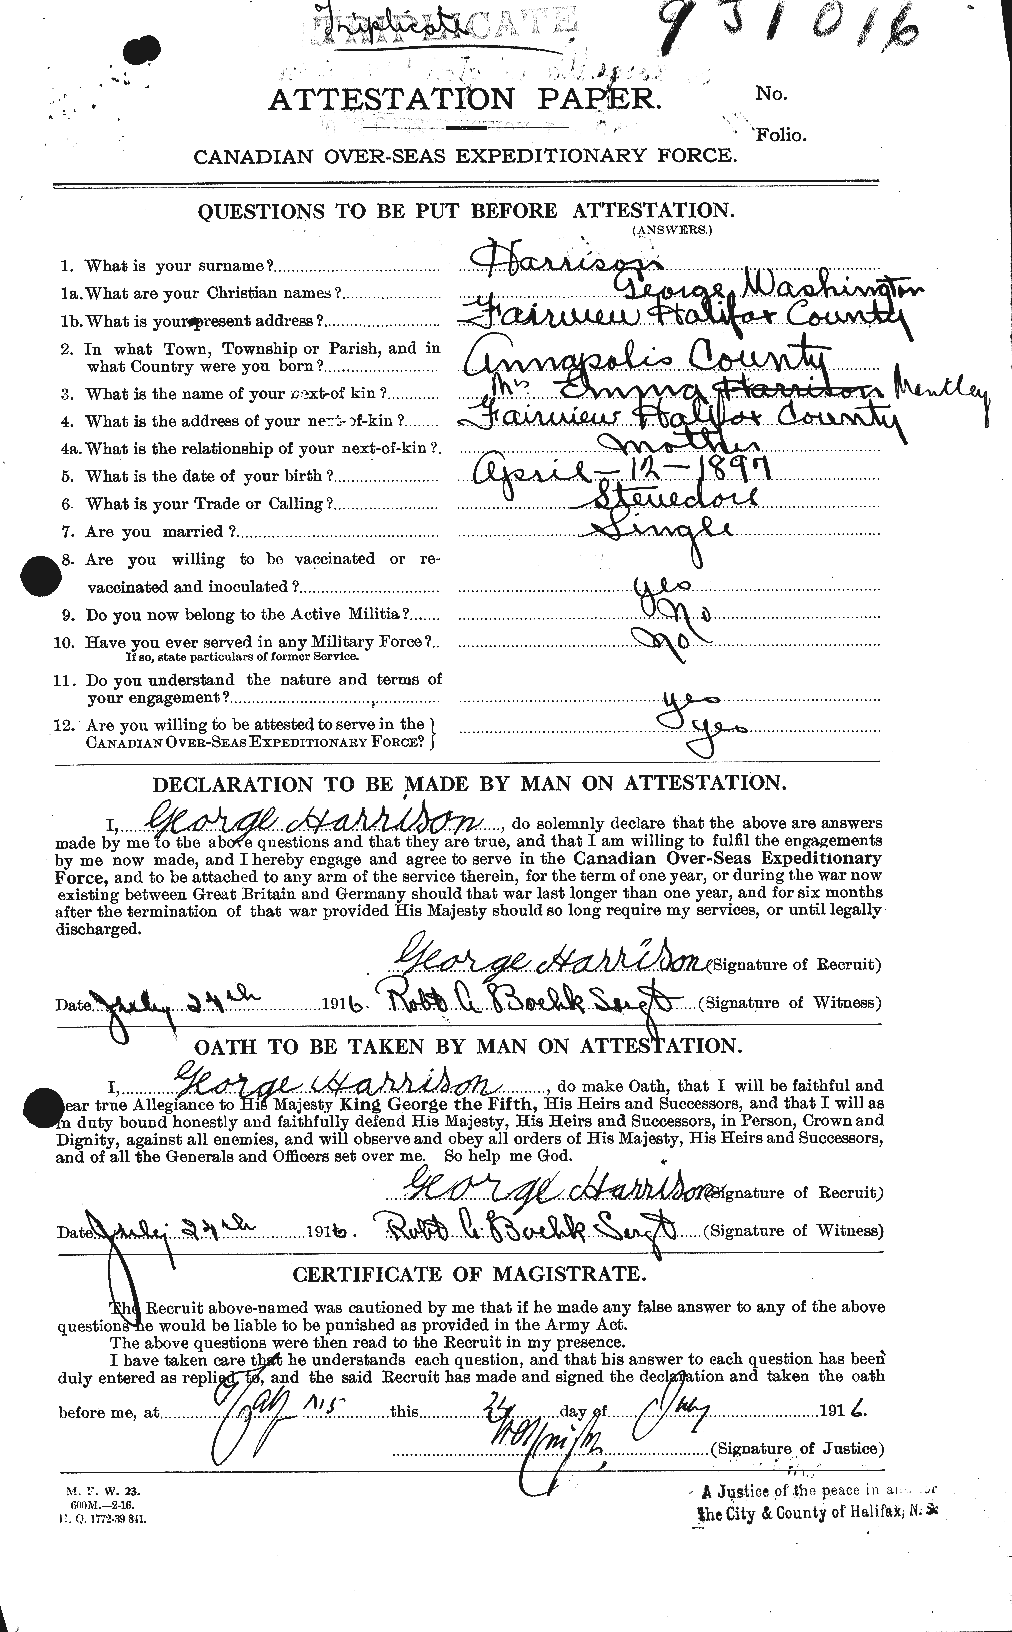 Dossiers du Personnel de la Première Guerre mondiale - CEC 380461a